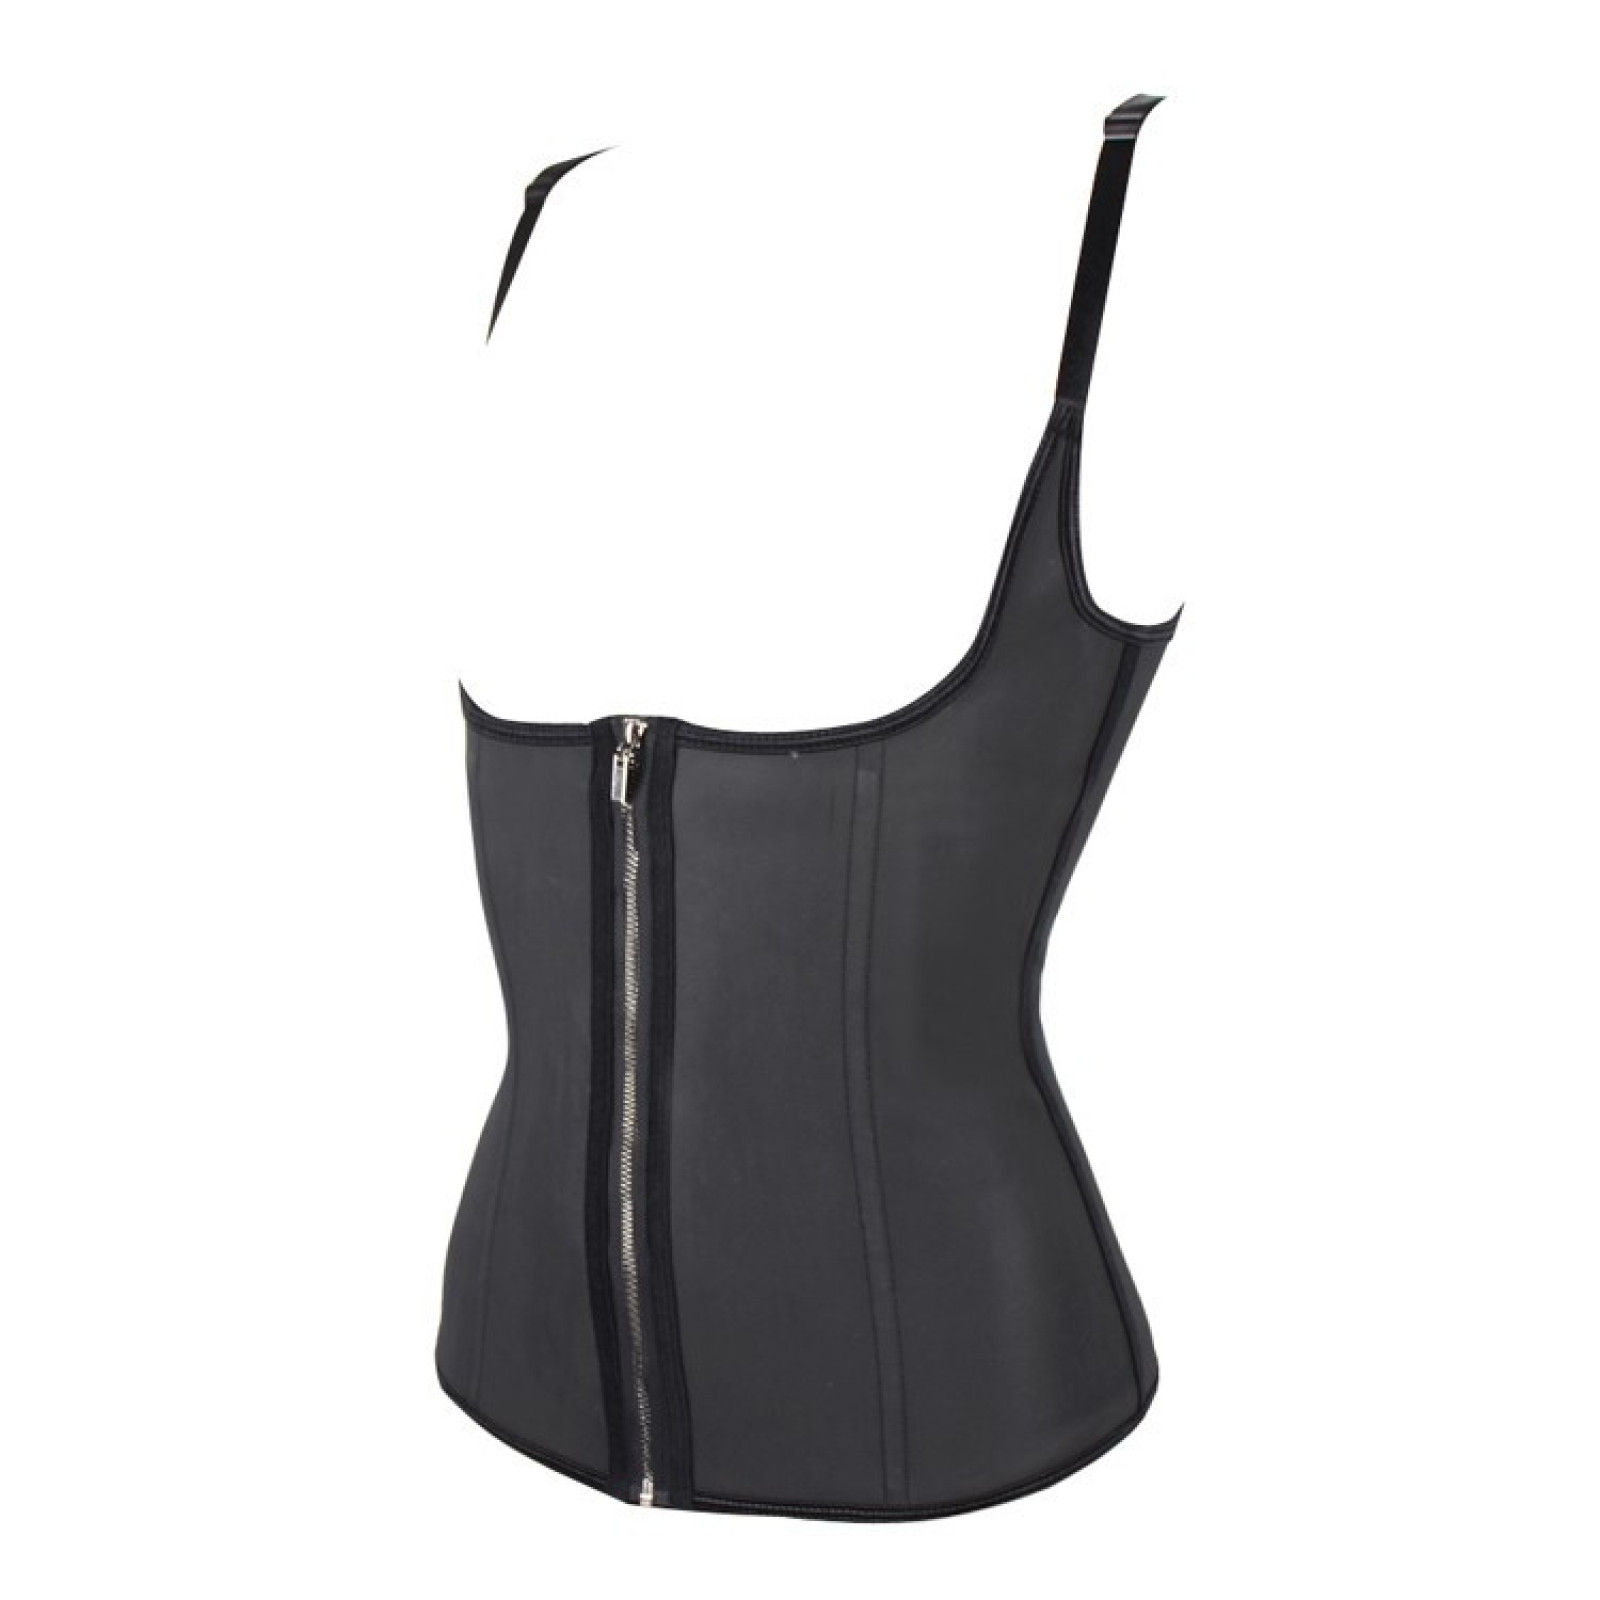 Утягивающий корсет для похудения на бретельках Adjustable shoulder strap corset черный XL 153987